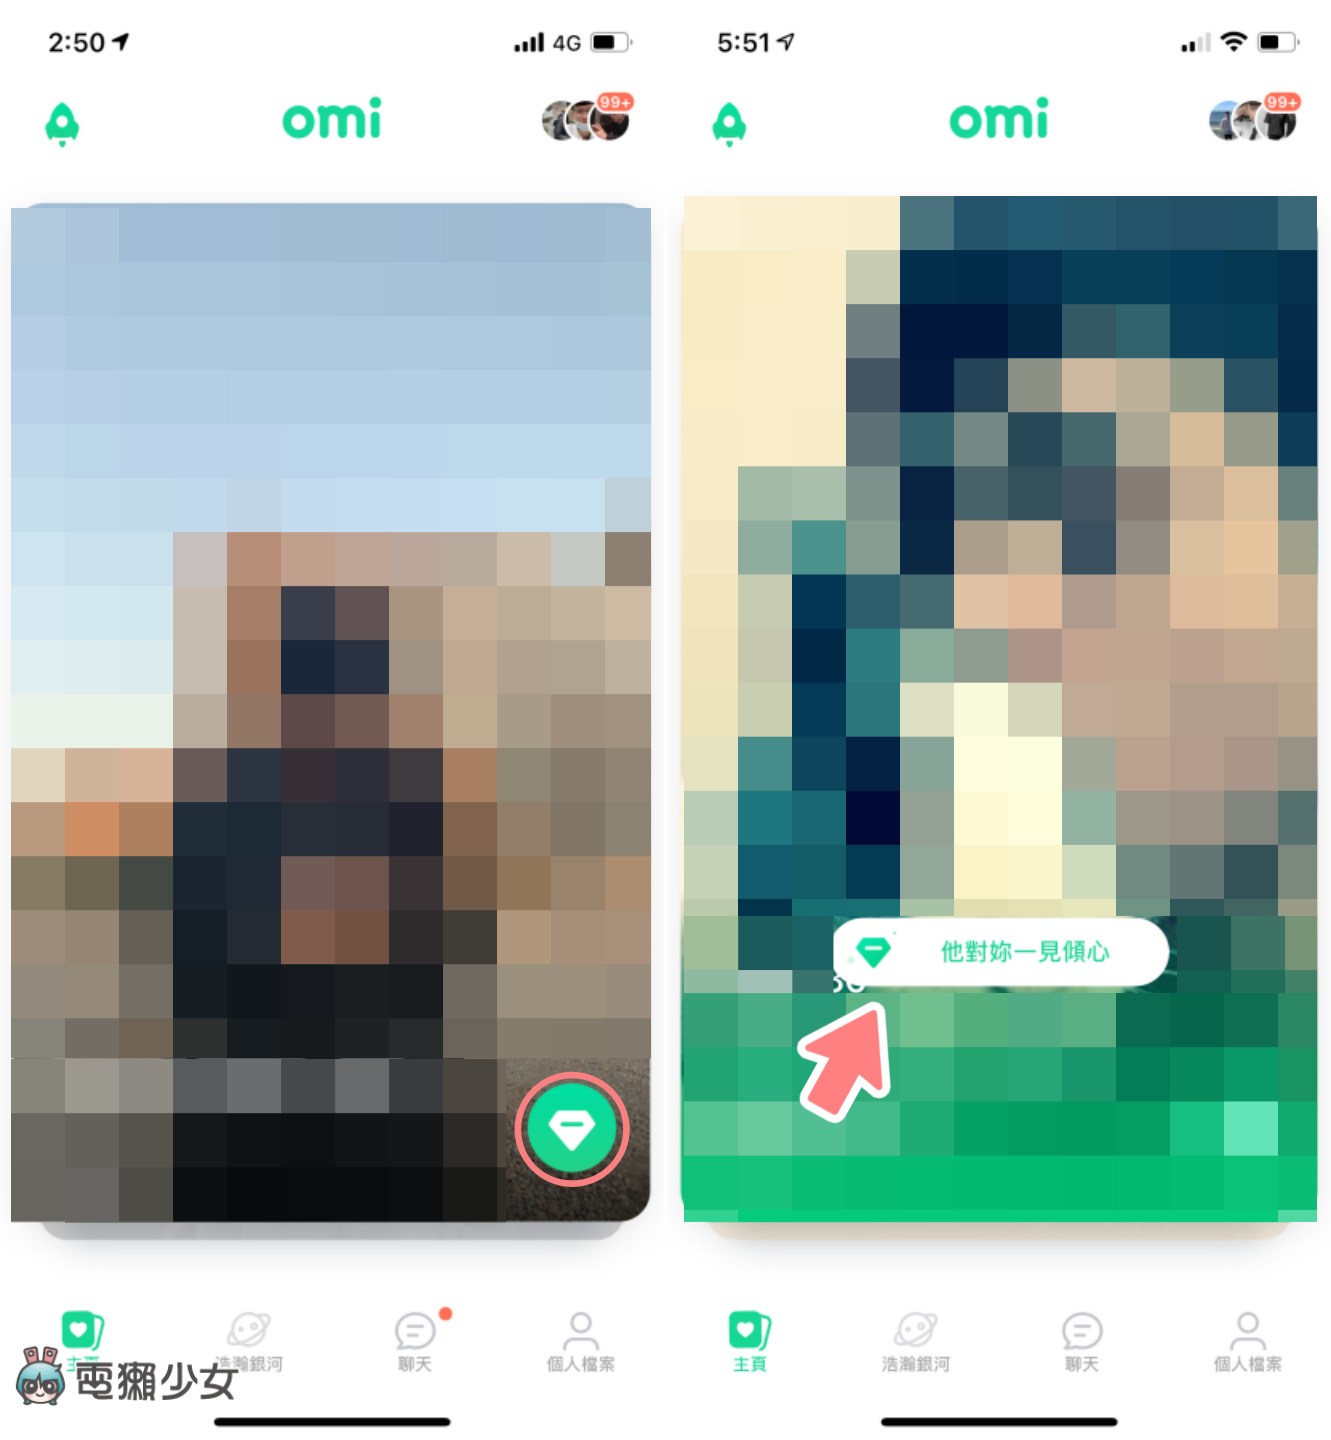 交友軟體都配對不到人？試試看 Omi 新推『 戀人卡 』盲聊功能 選擇一樣答案的才有機會配對！